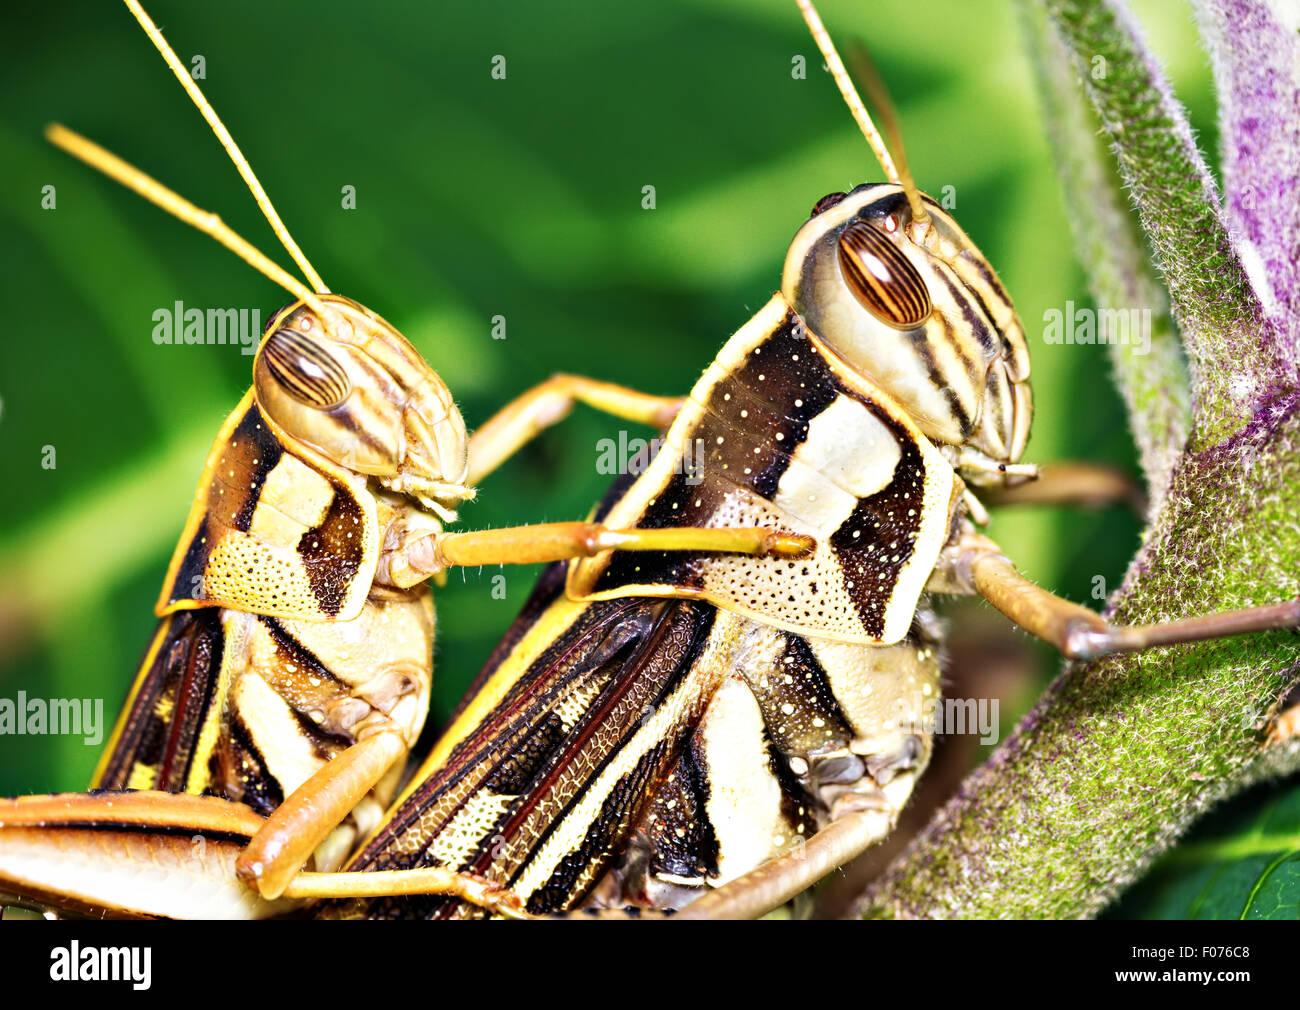 Gros plan de l'accouplement des sauterelles américain (Schistocerca americana). Également appelé sauterelle des oiseaux Banque D'Images